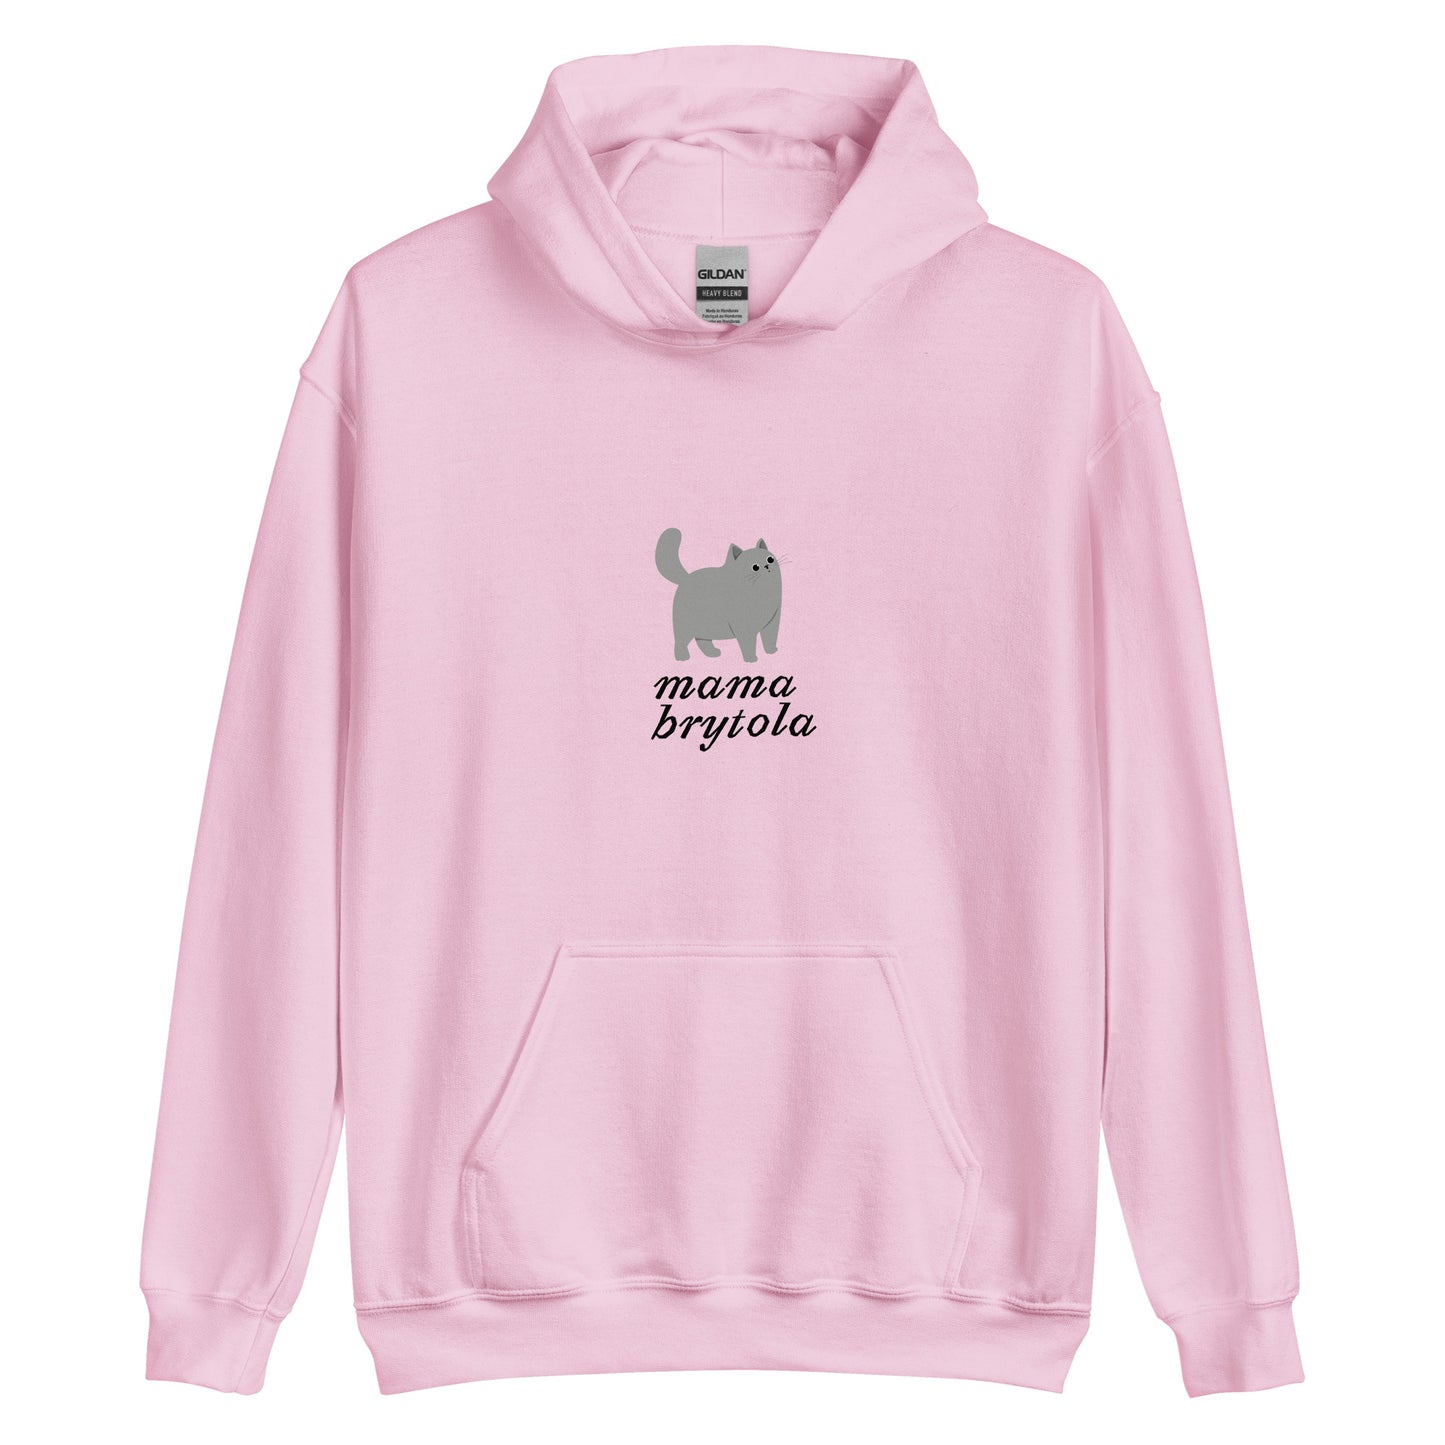 bluza mama brytola prezent dla kociary różowy